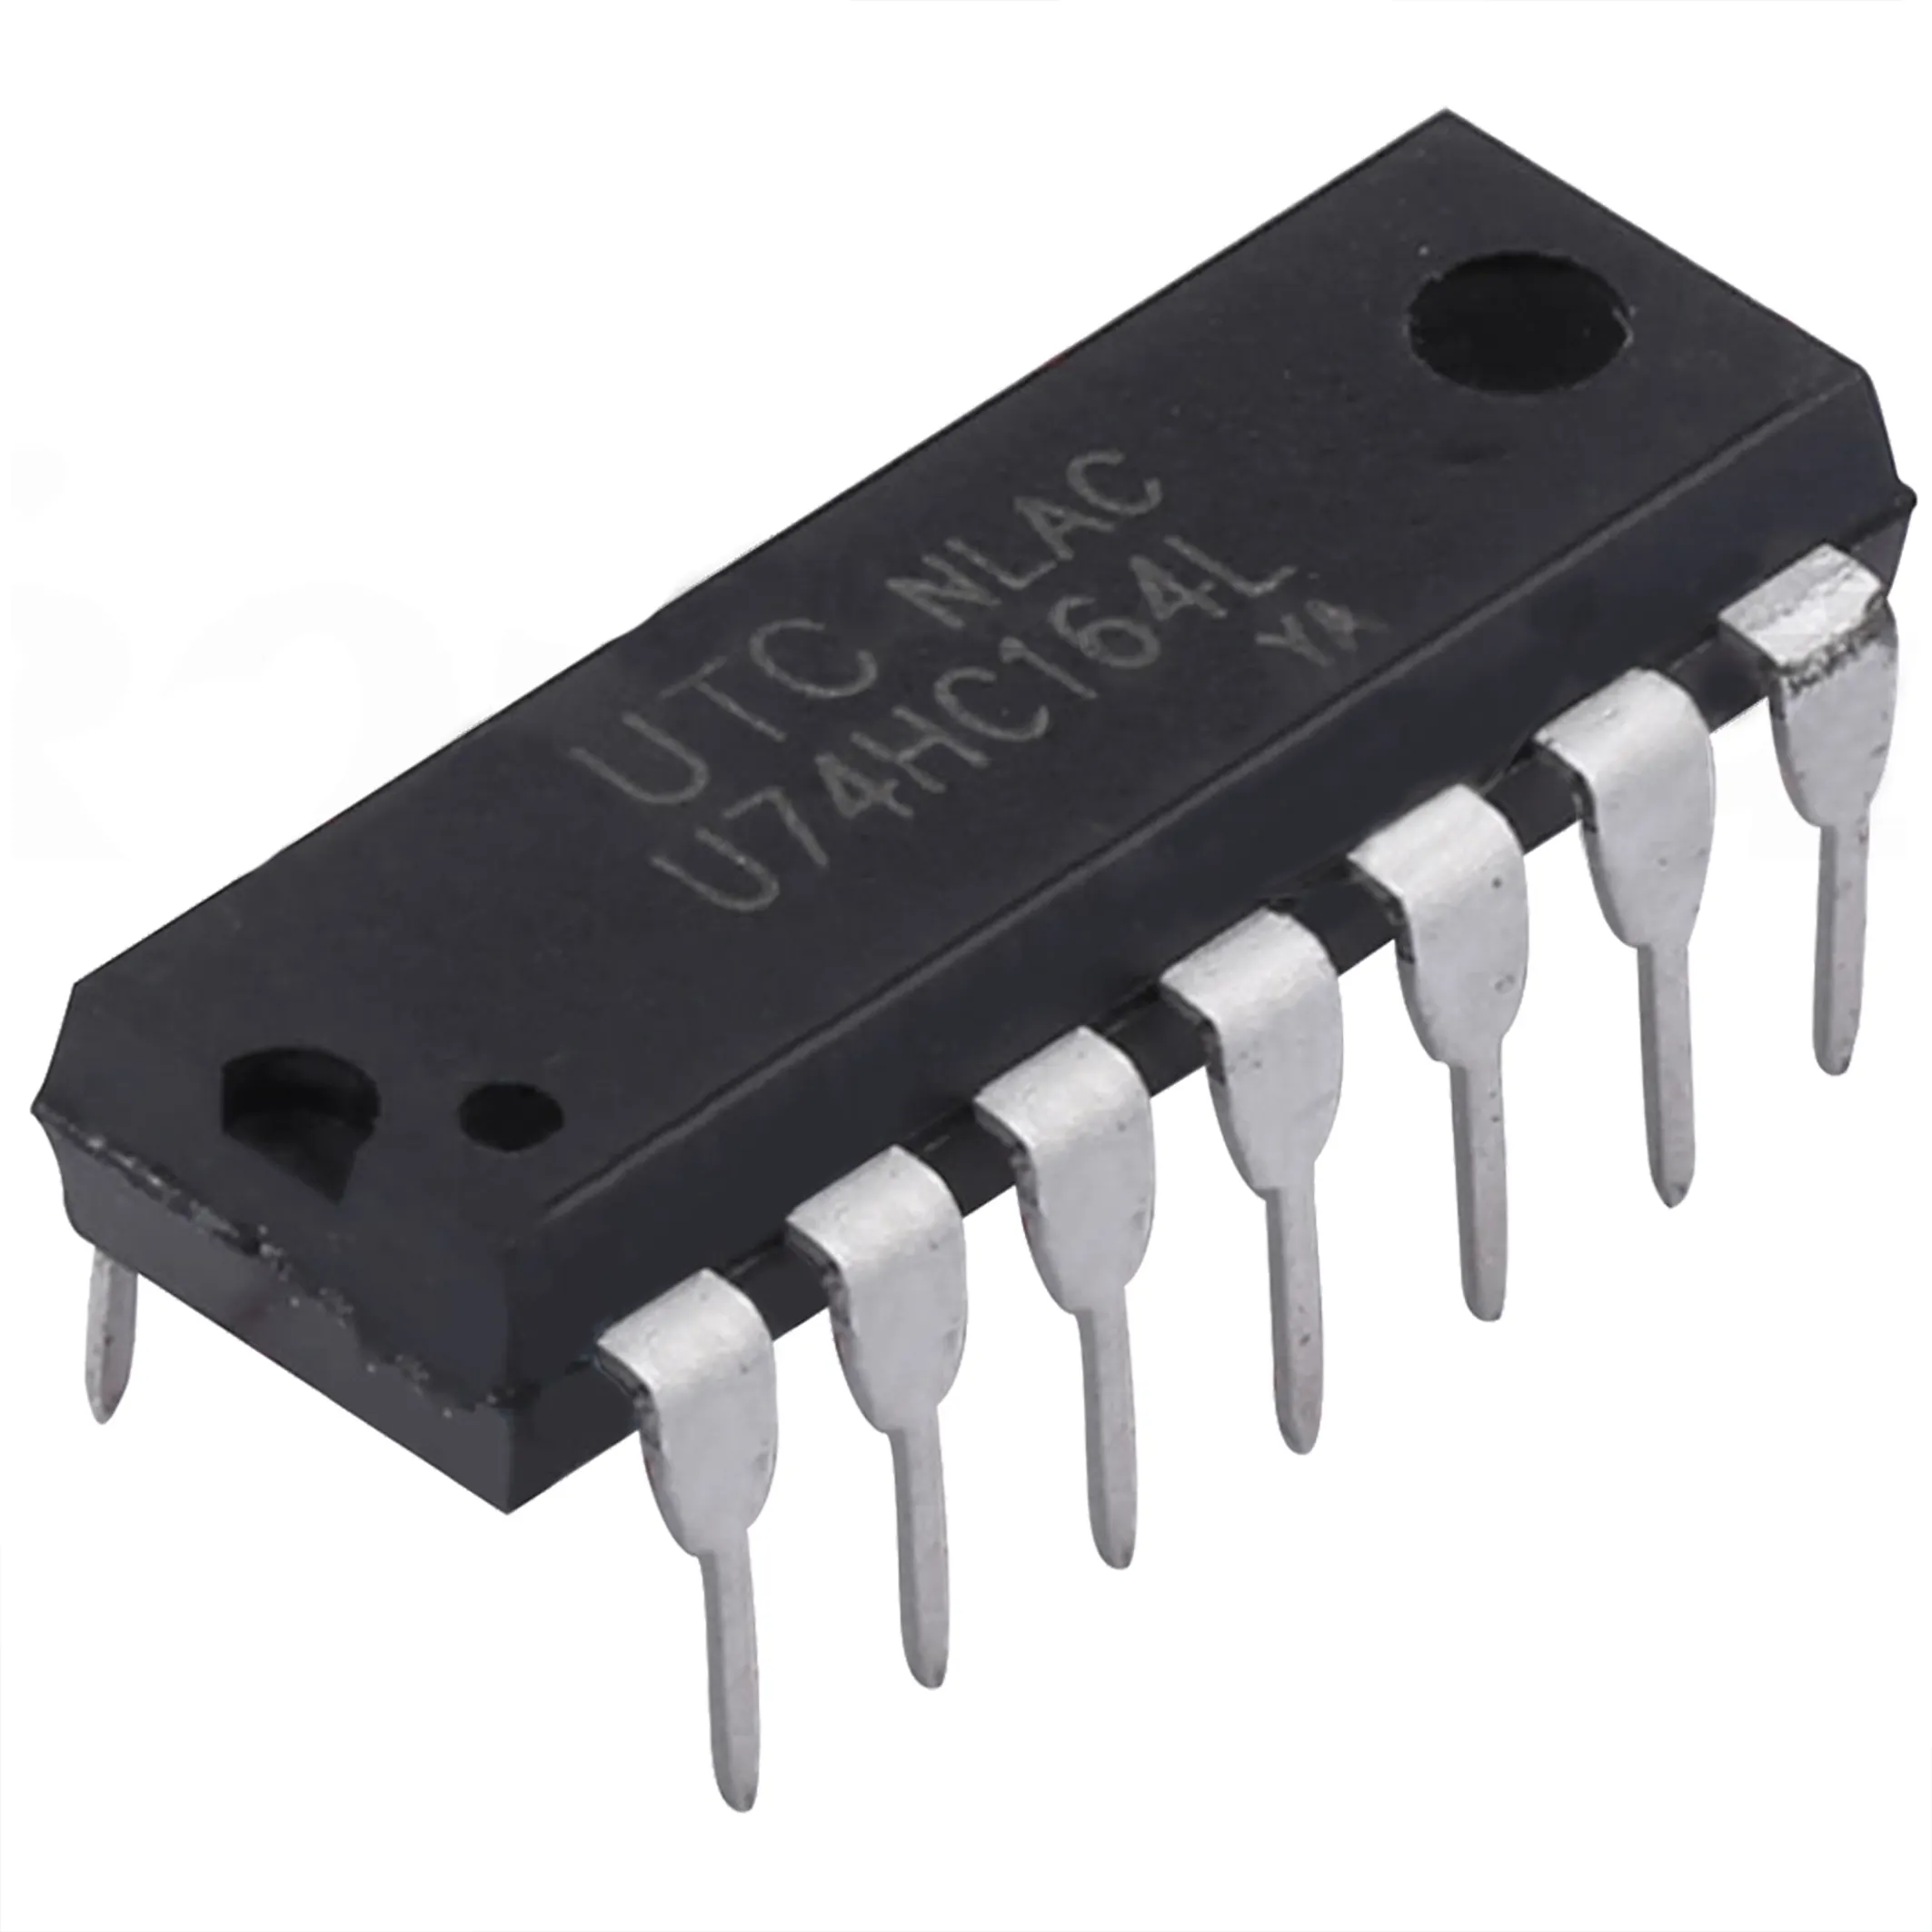 Teknologi LORIDA Circuits HC164 TSSOP-14 8-Bit Paralel Output Pergeseran Regis Modul BOM Mcu Ic Chip Sirkuit Terpadu